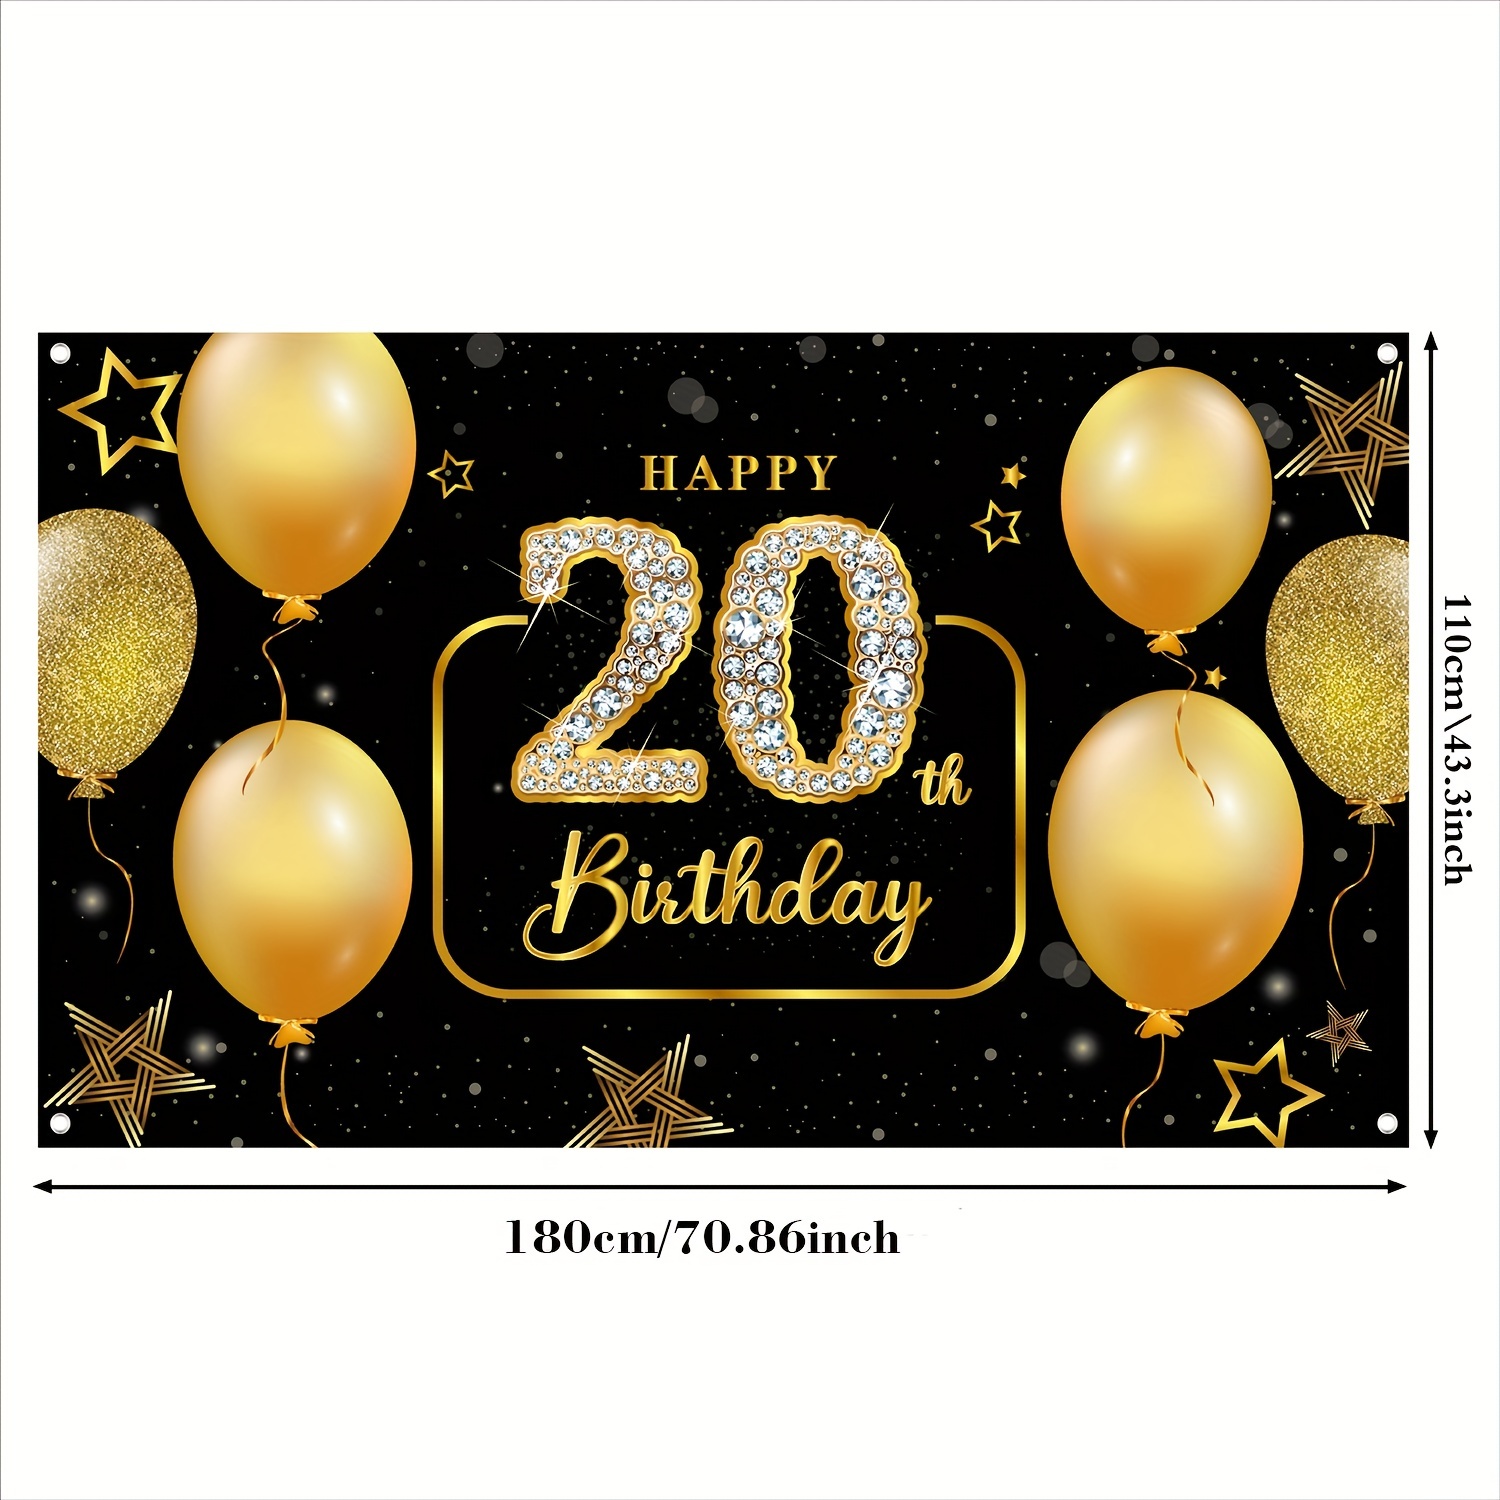 Bannière anniversaire 20 ans : vente d'article de fête et de